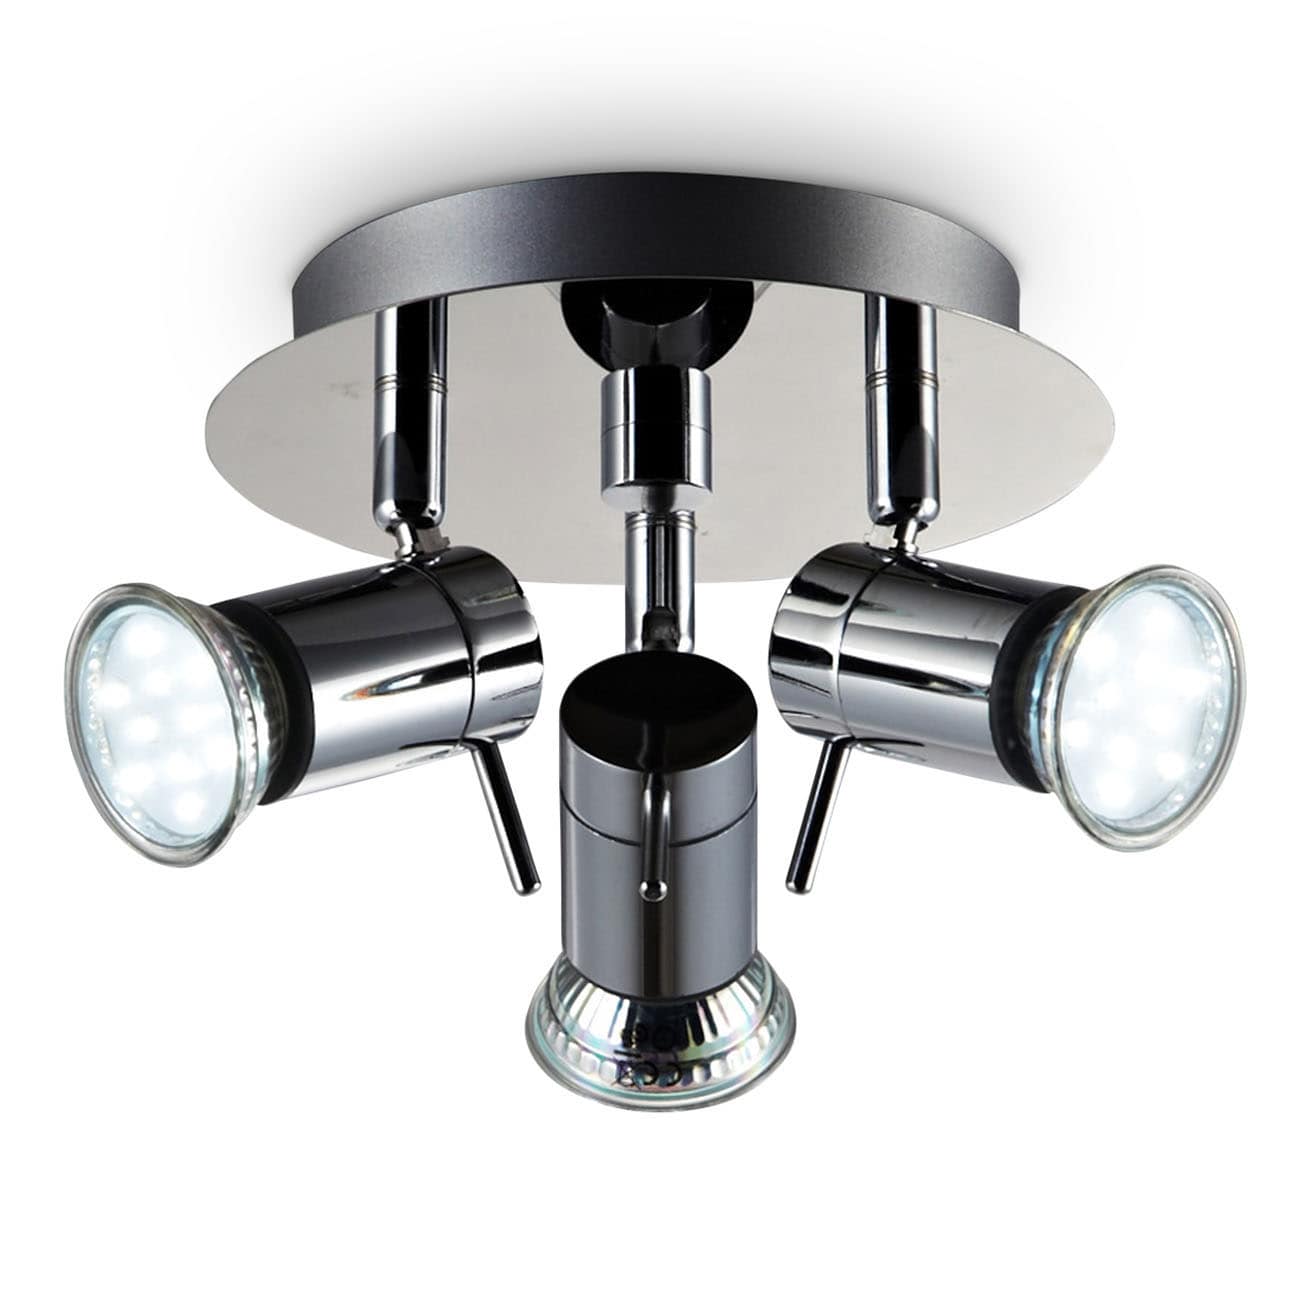 LED Bad-Deckenspot Ø16,5cm - 4-flammig - Badezimmer-Lampe IP44 230V GU10 9W 750lm warmweiß | Chrom - 1